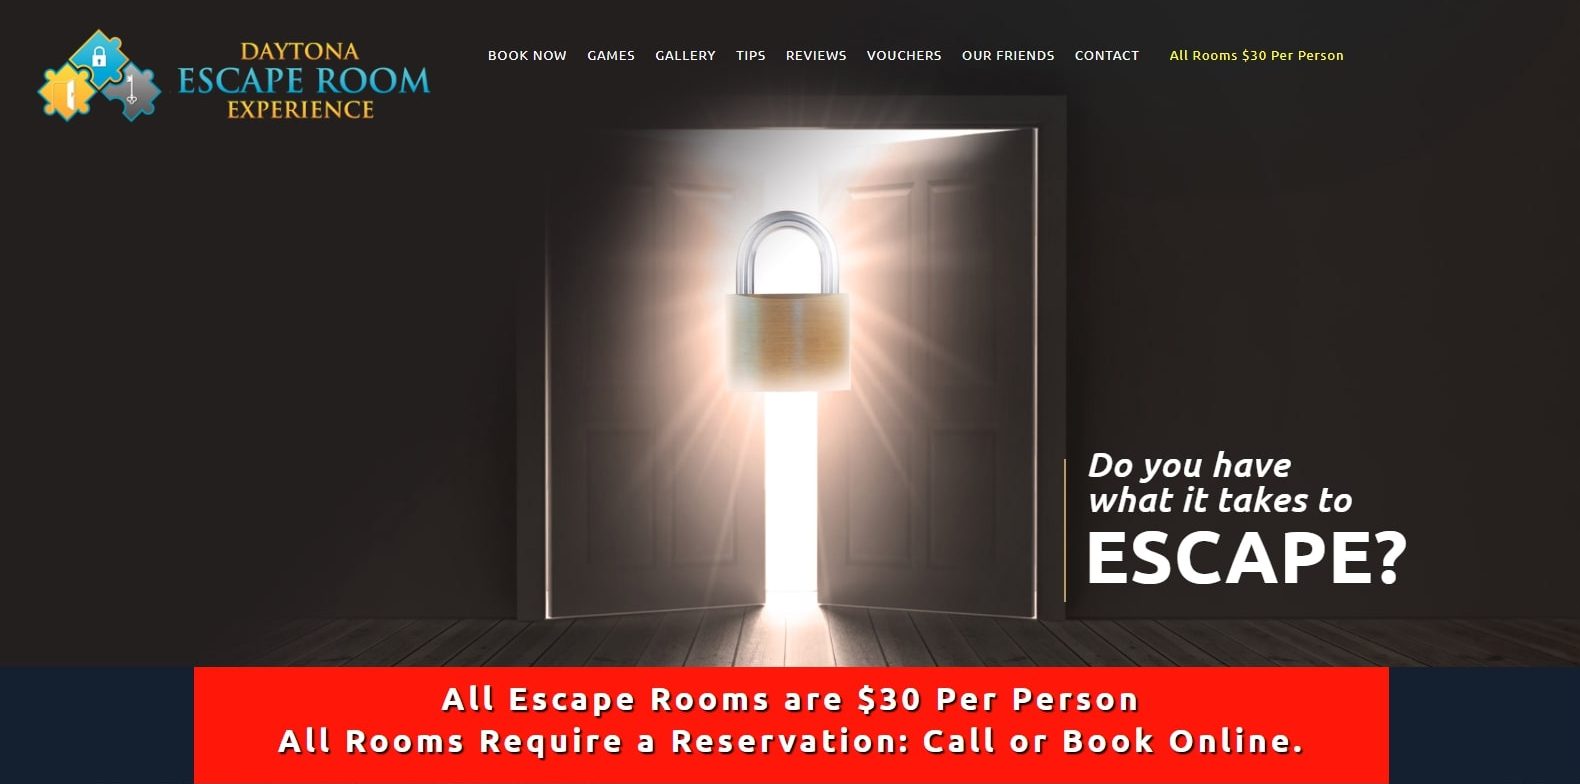 Daytona Escape Room Experience